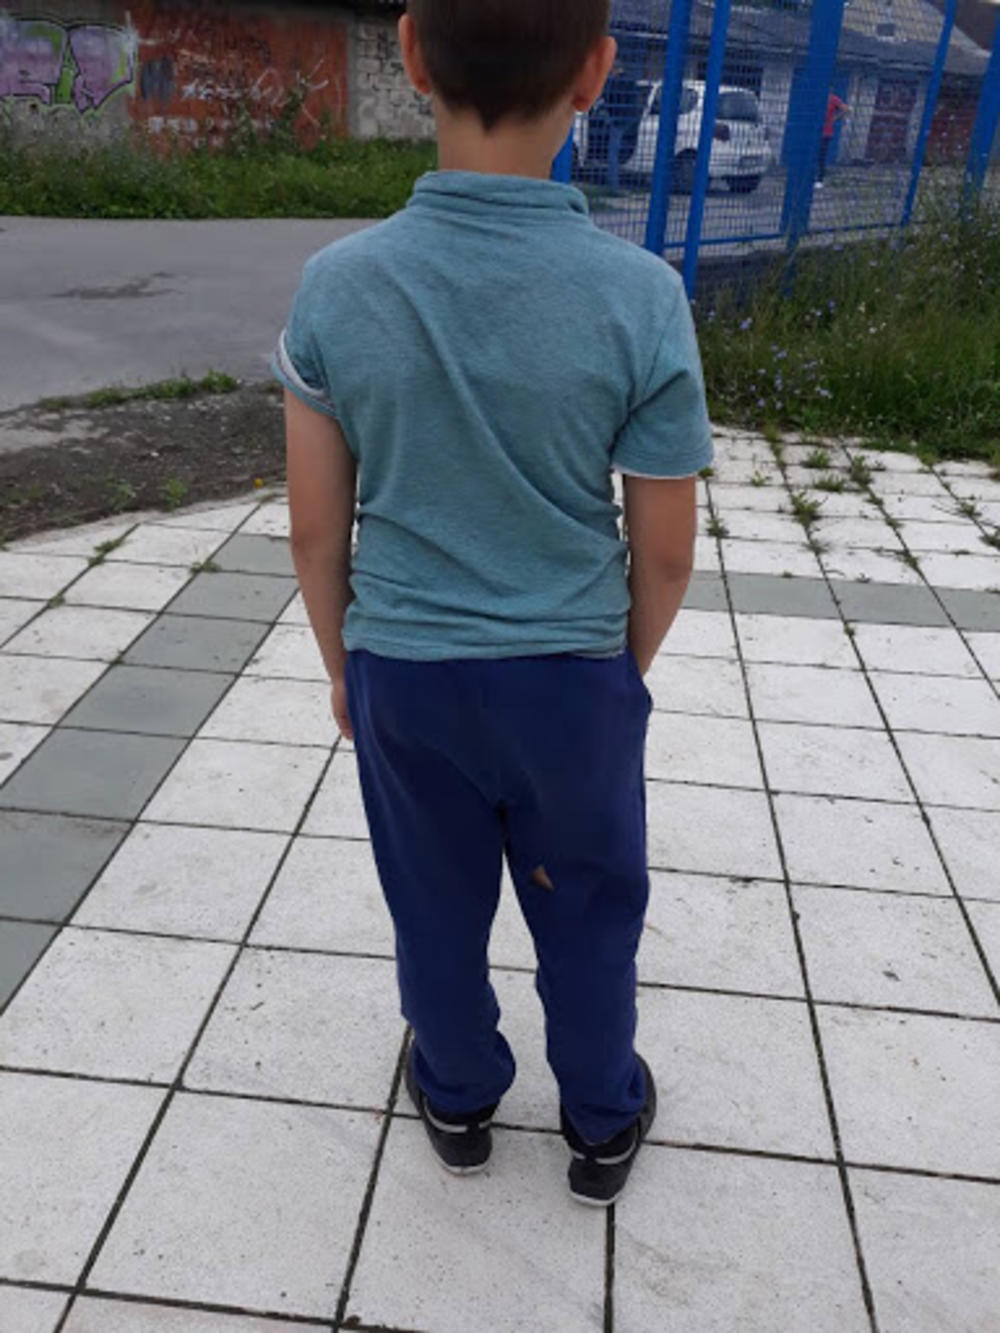 Dečak je izujedan ispred školskog dvorišta  